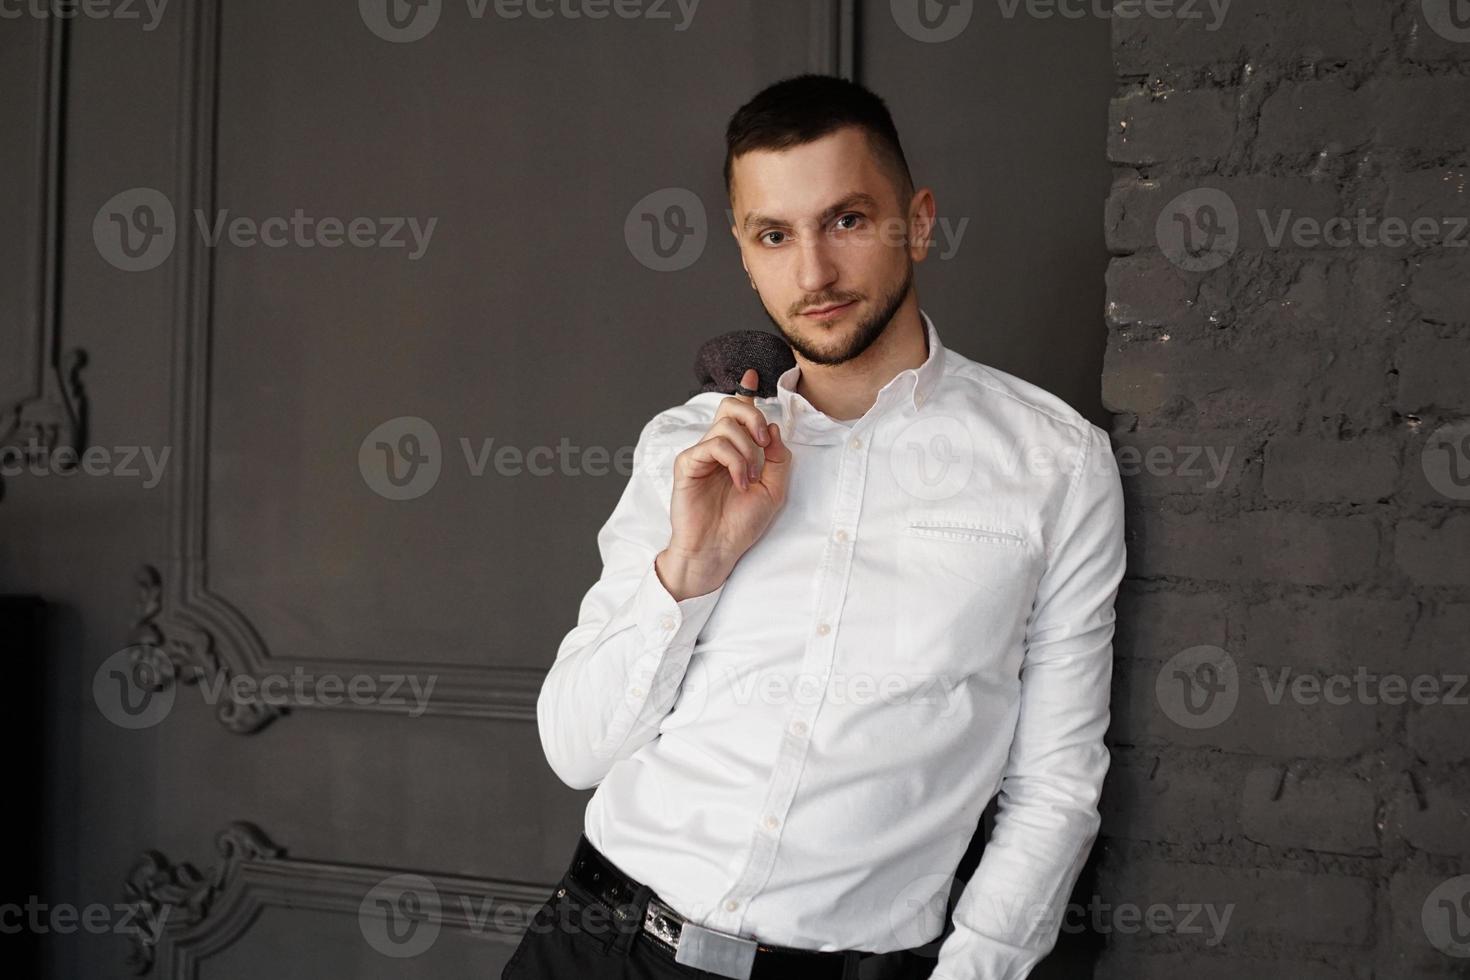 jeune homme d'affaires élégant en chemise blanche tient une veste sur le doigt photo